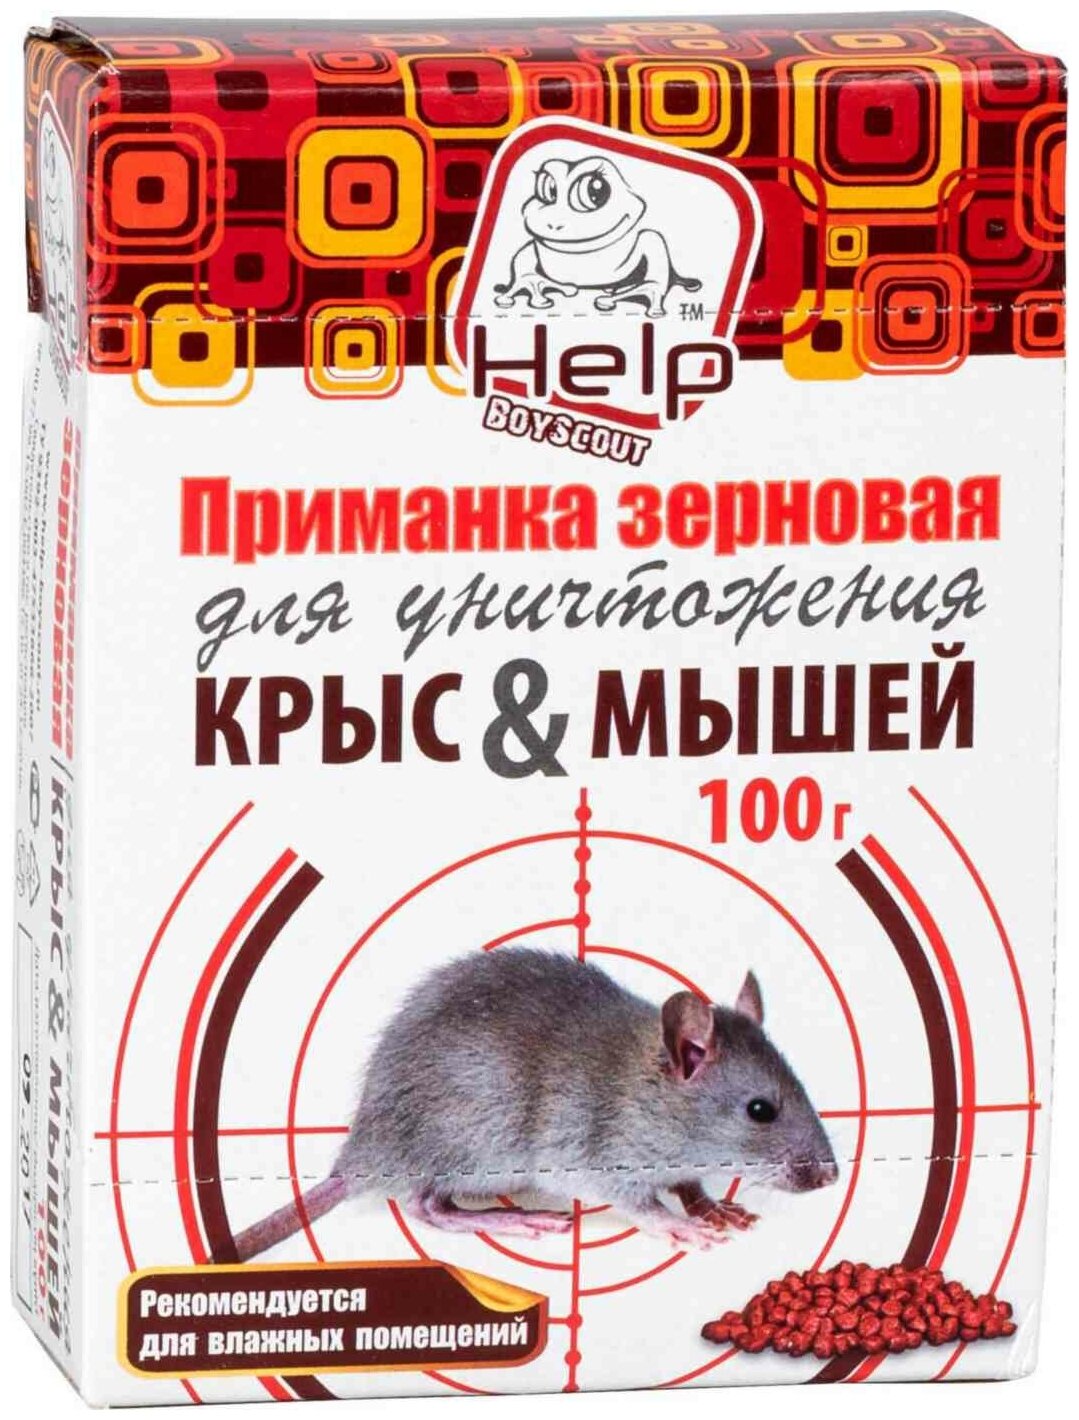 Приманка зерновая "Help" для уничтожения крыс и мышей 100 грамм